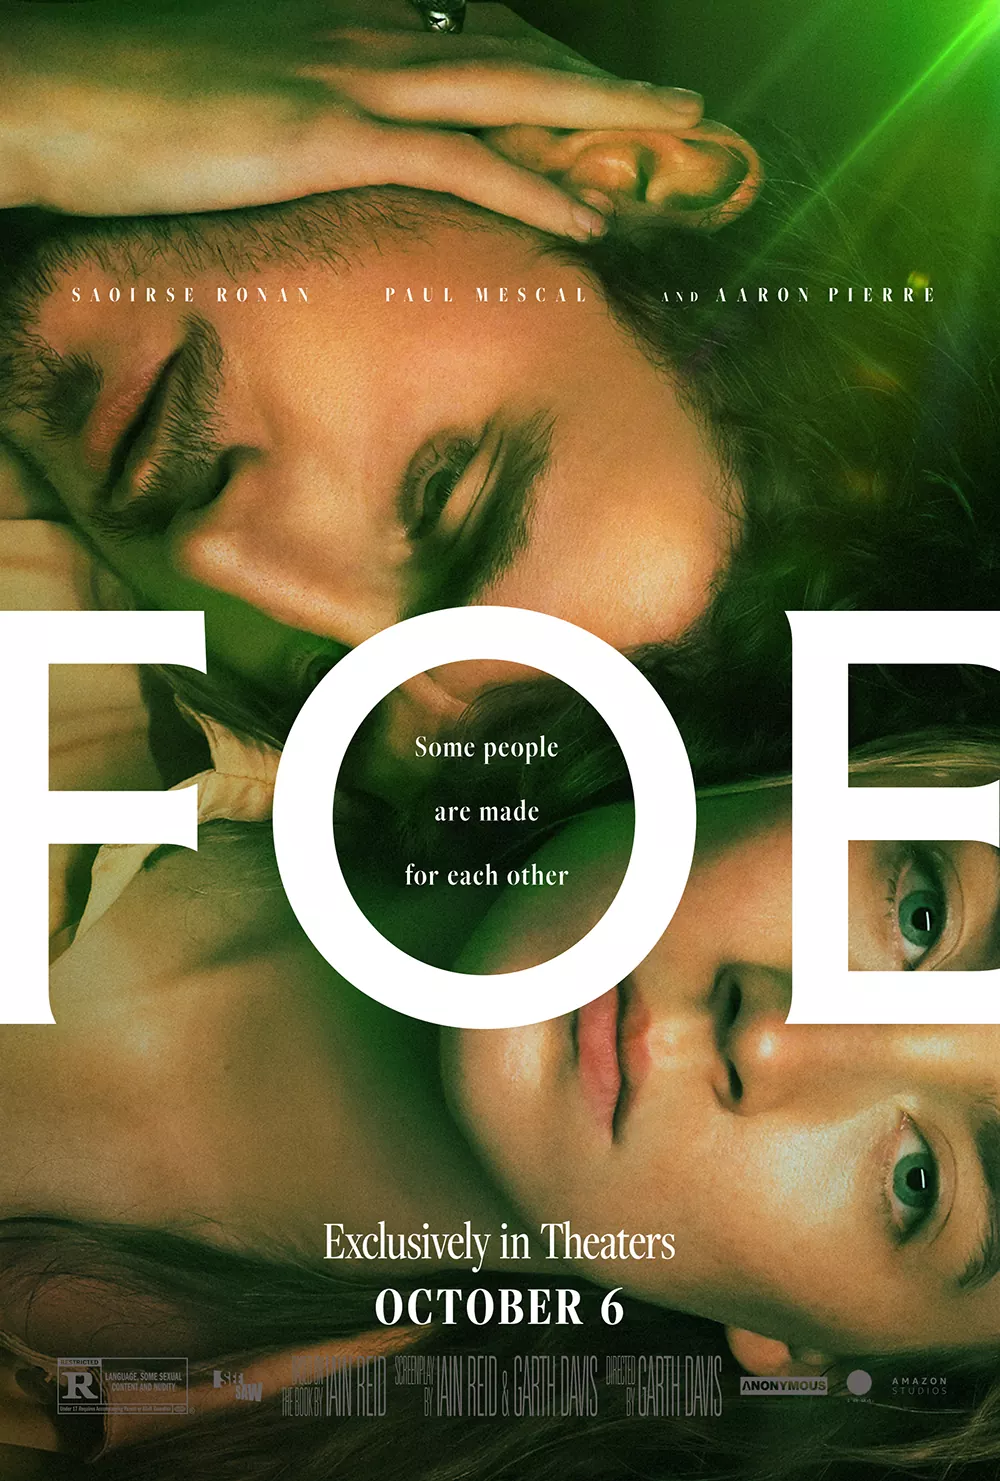 Trailer Από Το Ρομαντικό Δράμα "Foe"